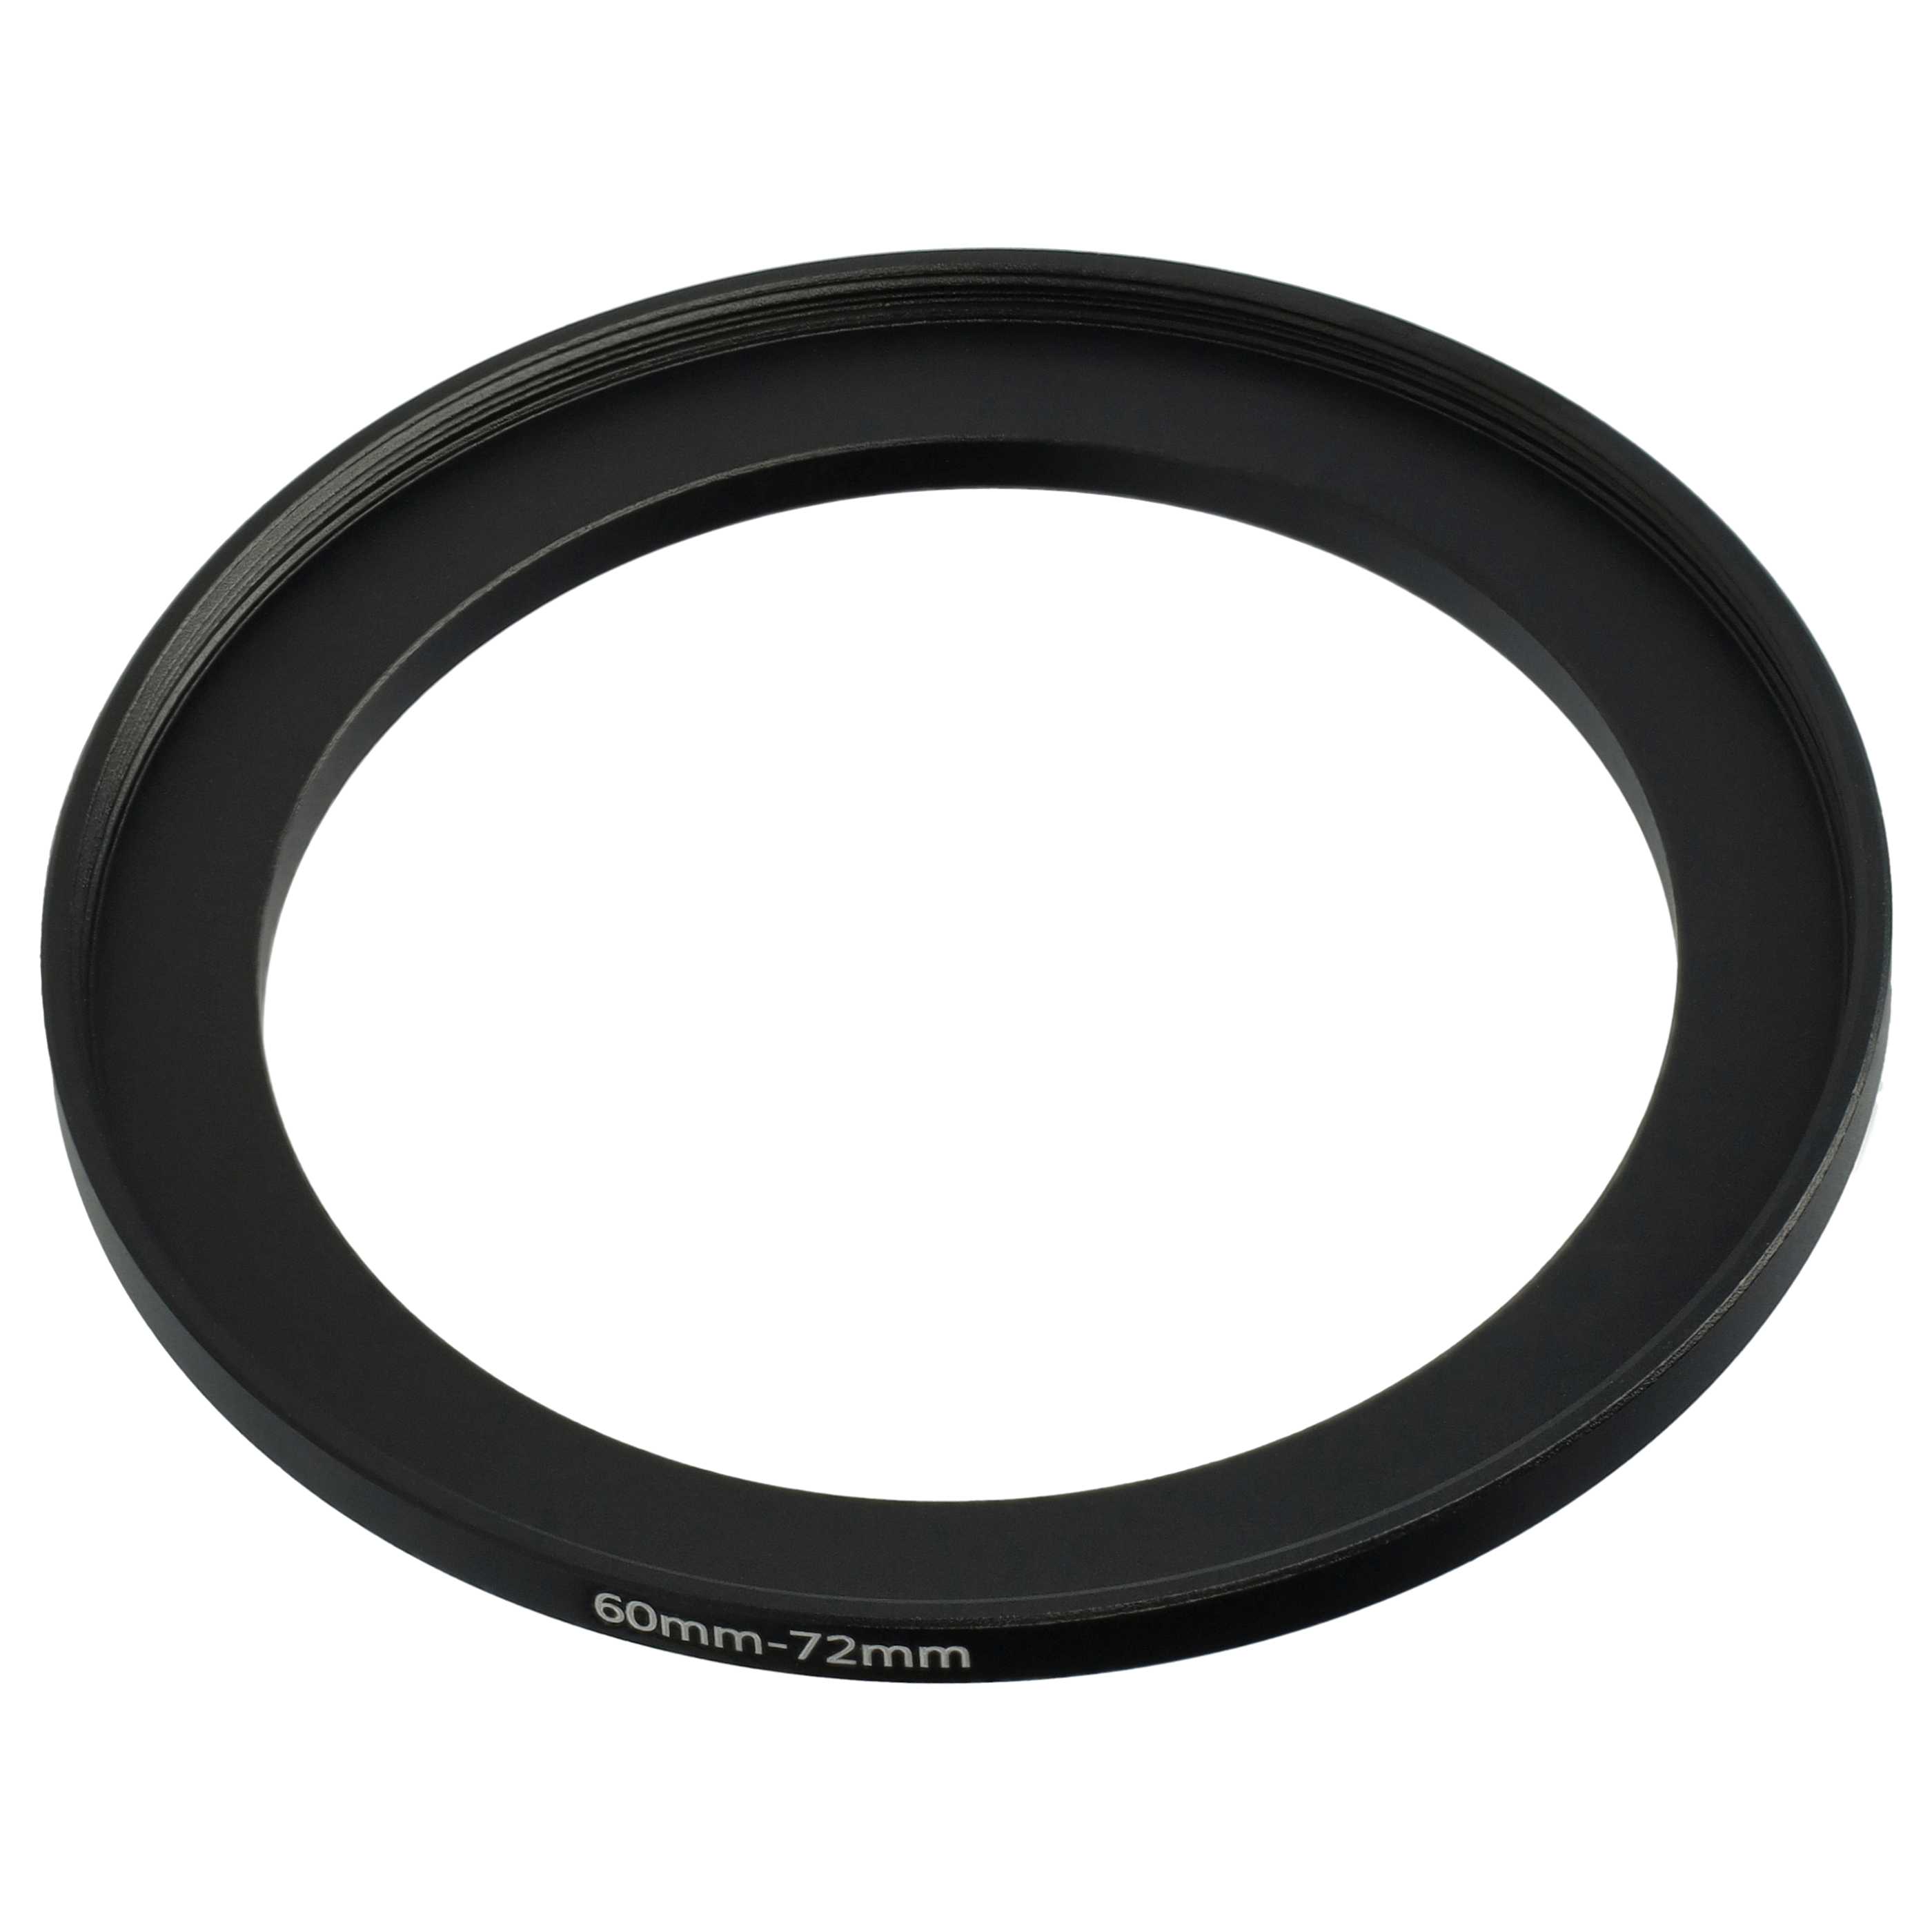 Step-Up-Ring Adapter 60 mm auf 72 mm passend für diverse Kamera-Objektive - Filteradapter